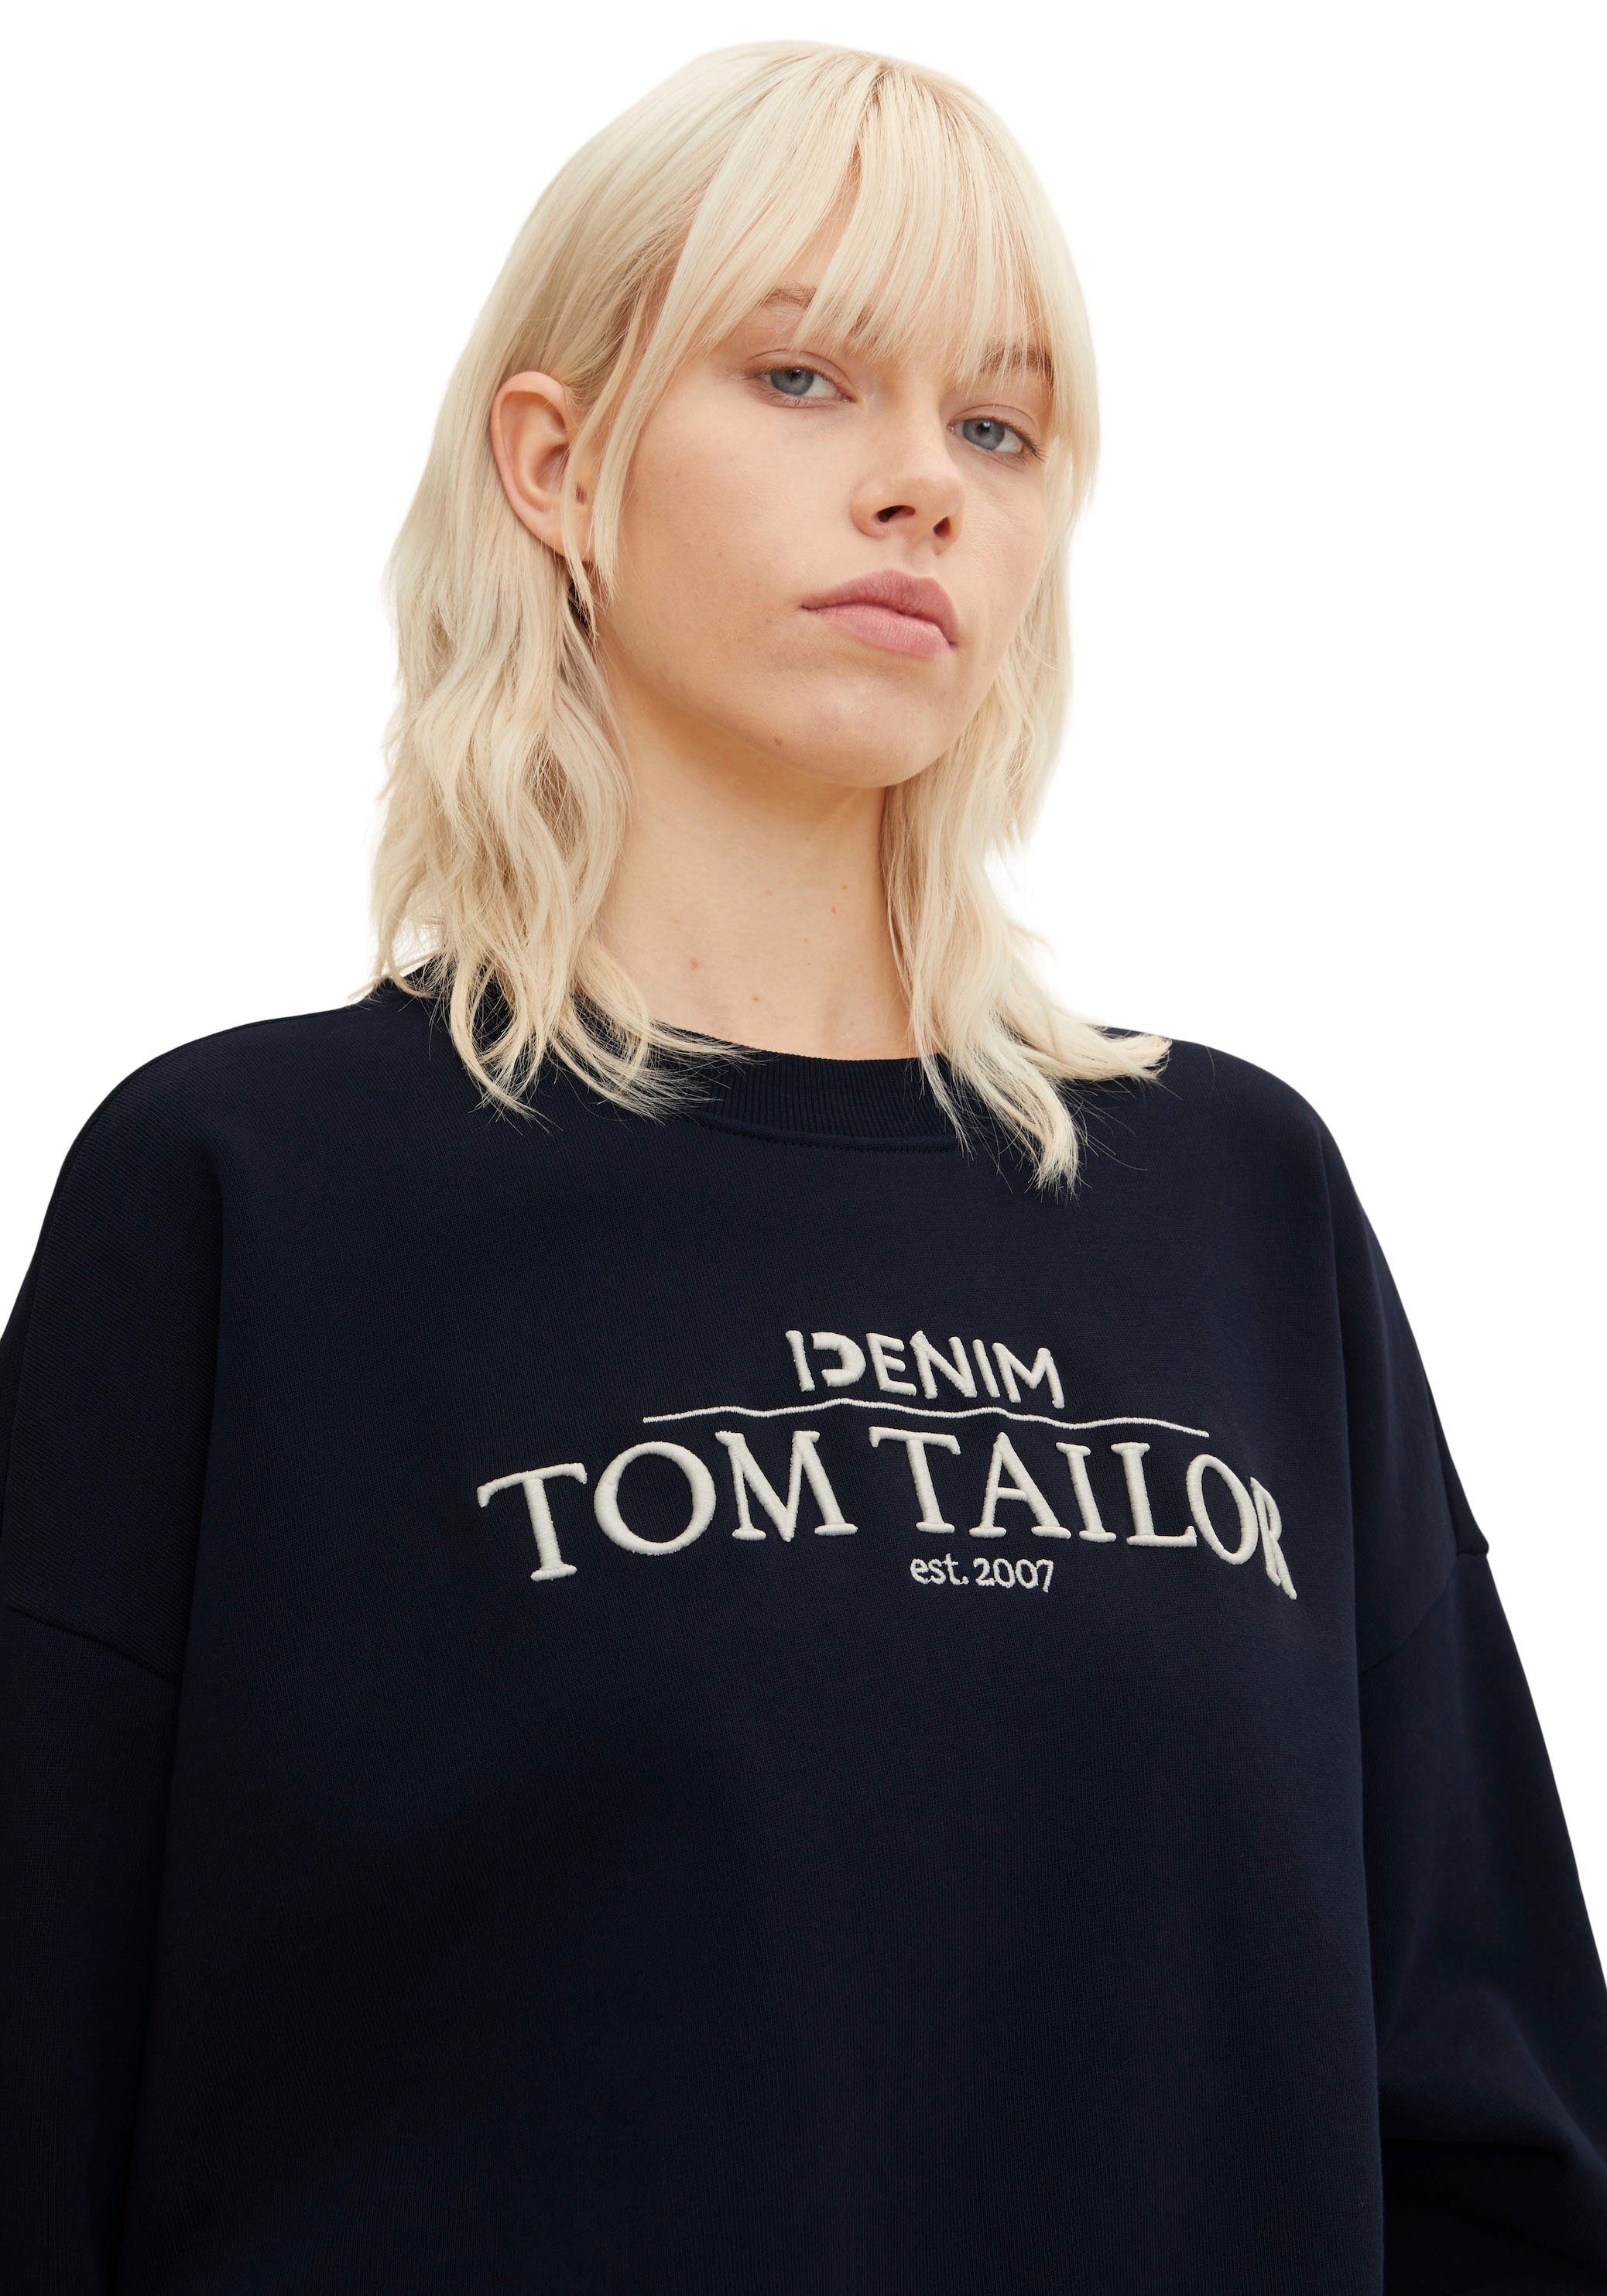 TAILOR überschnittenen Tailor TOM von Sweater Schultern, Klassischer Sweatshirt mit Denim Tom